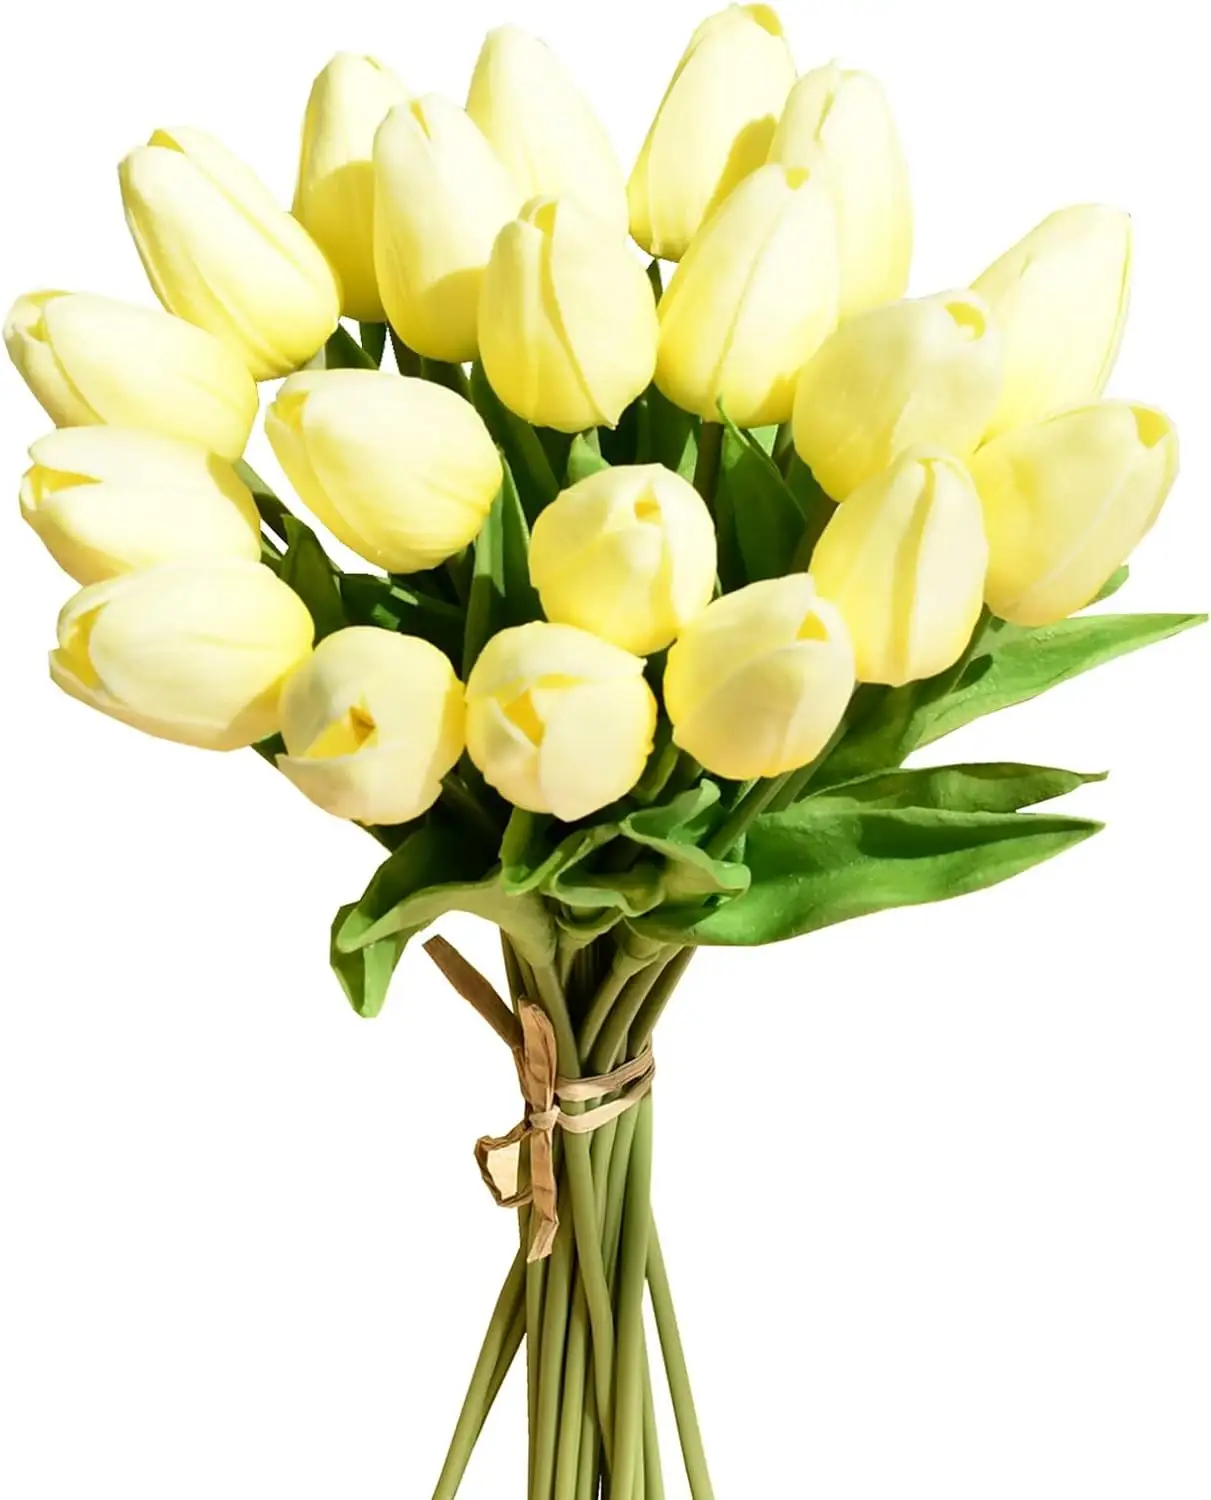 Tulip Mini kualitas tinggi, dekorasi pesta pernikahan sentuhan nyata Tulip bunga buatan